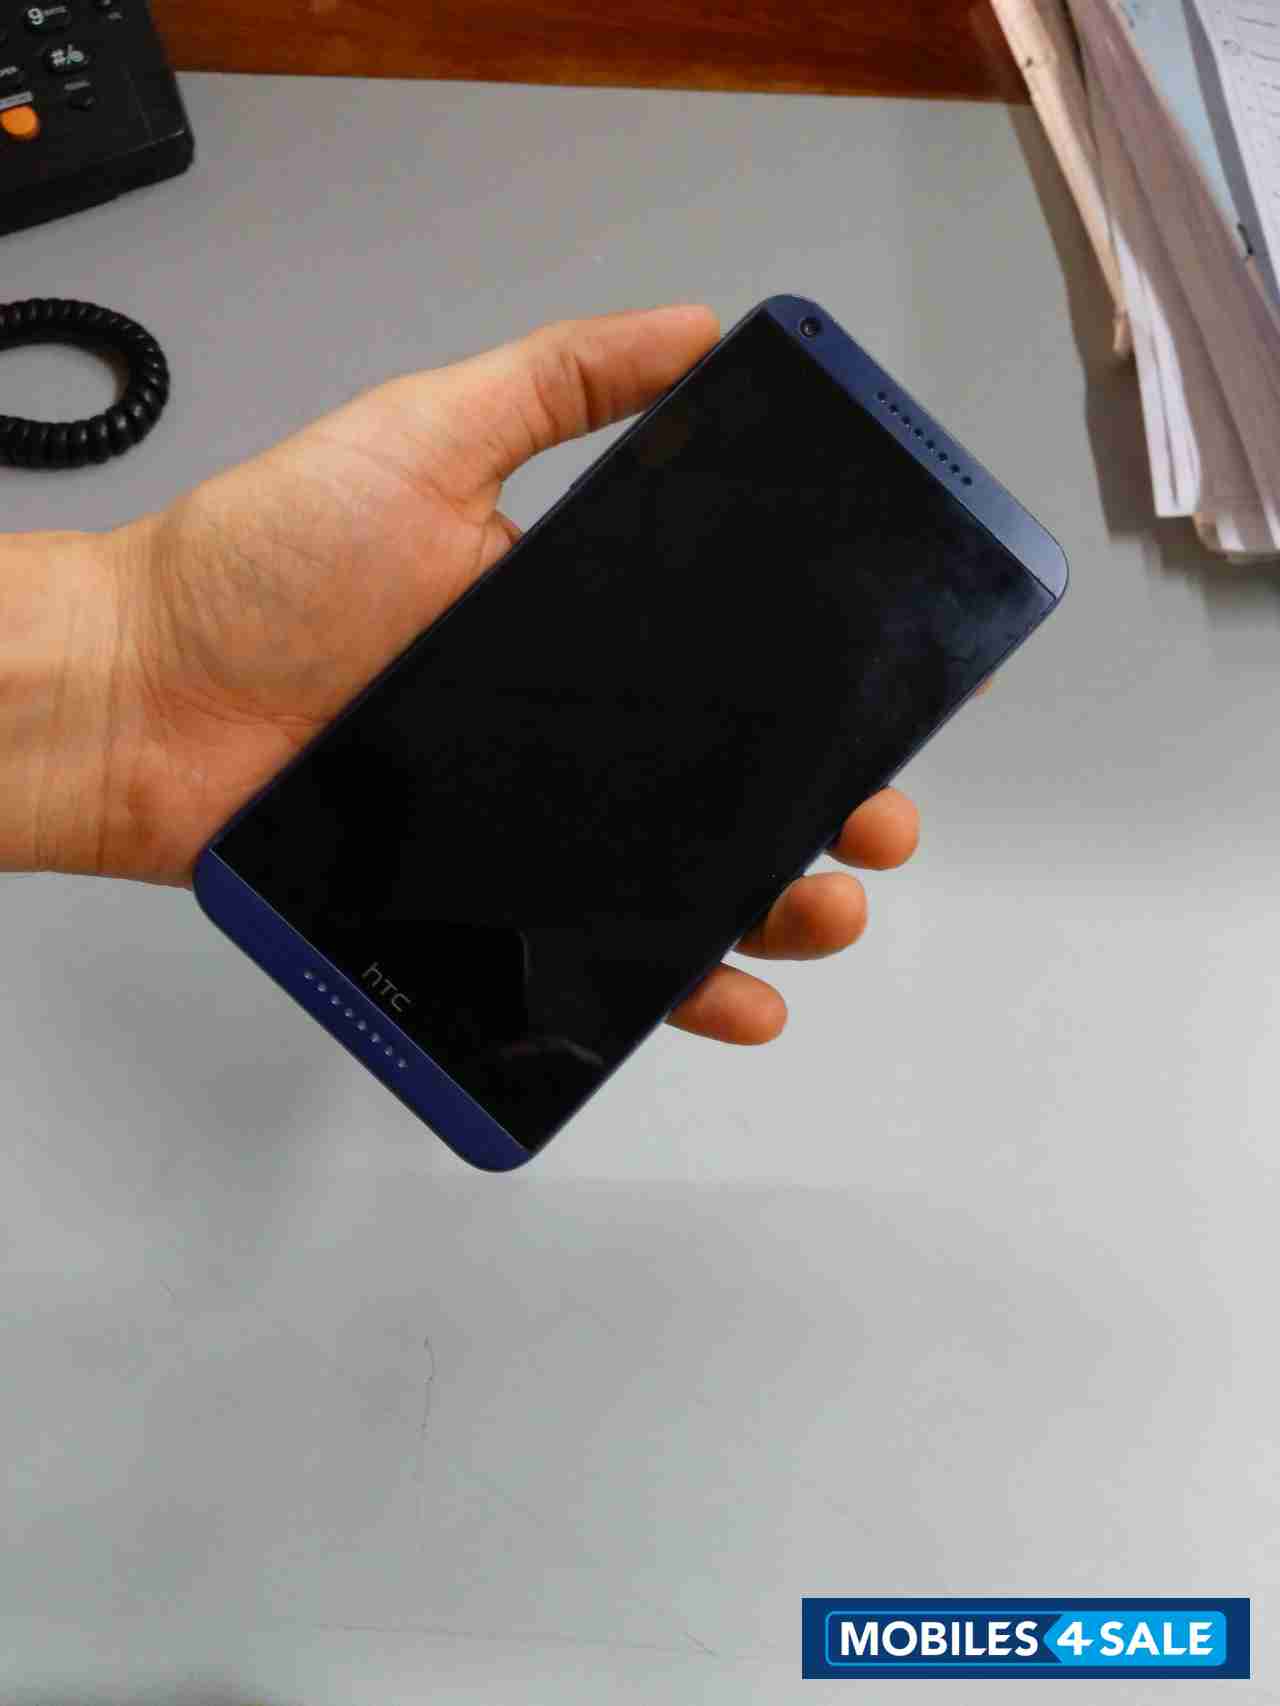 Blue HTC Desire 816G